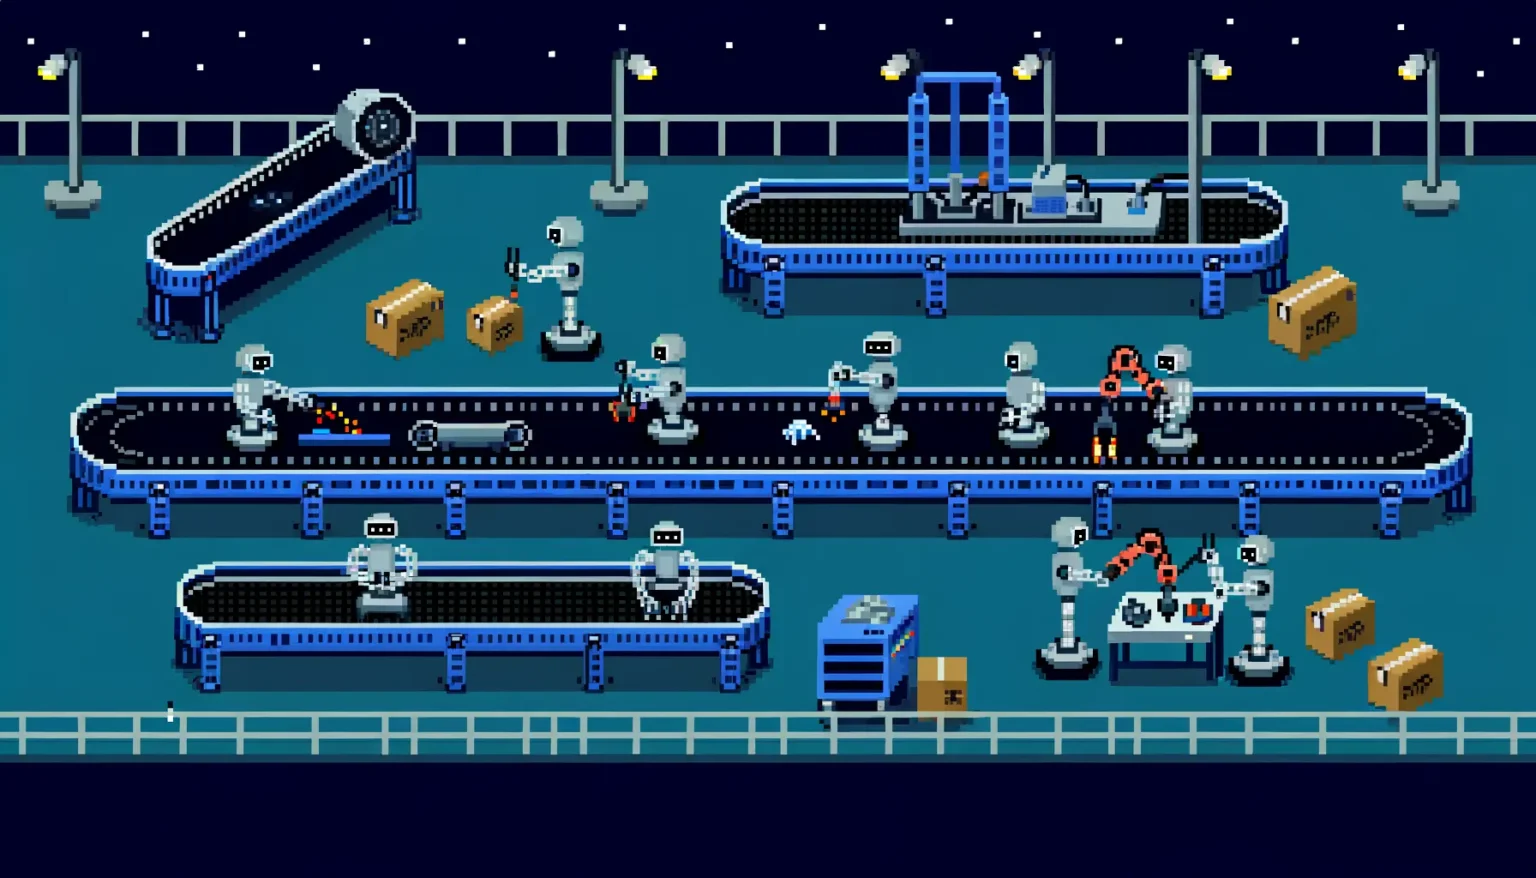 Pixelart-Szene einer nächtlichen Fabrik mit Förderbändern und roboterartigen Figuren, die verschiedene Aufgaben ausführen, wie z.B. das Tragen von Kisten oder das Bedienen von Maschinen unter künstlichen Lichtern.